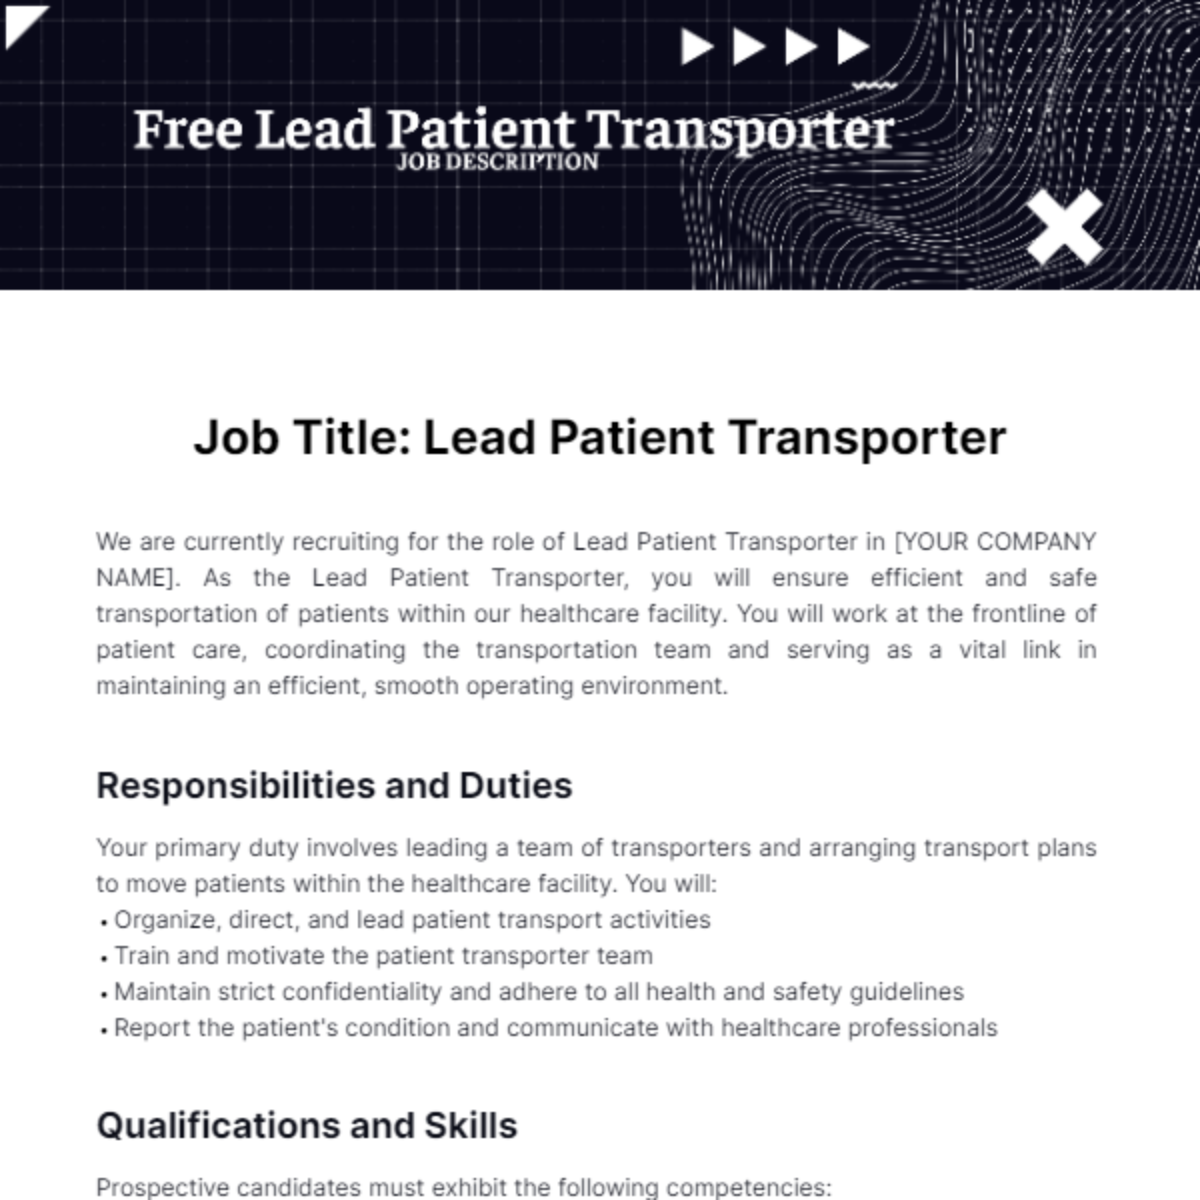 Free Lead Patient Transporter Job Description Template